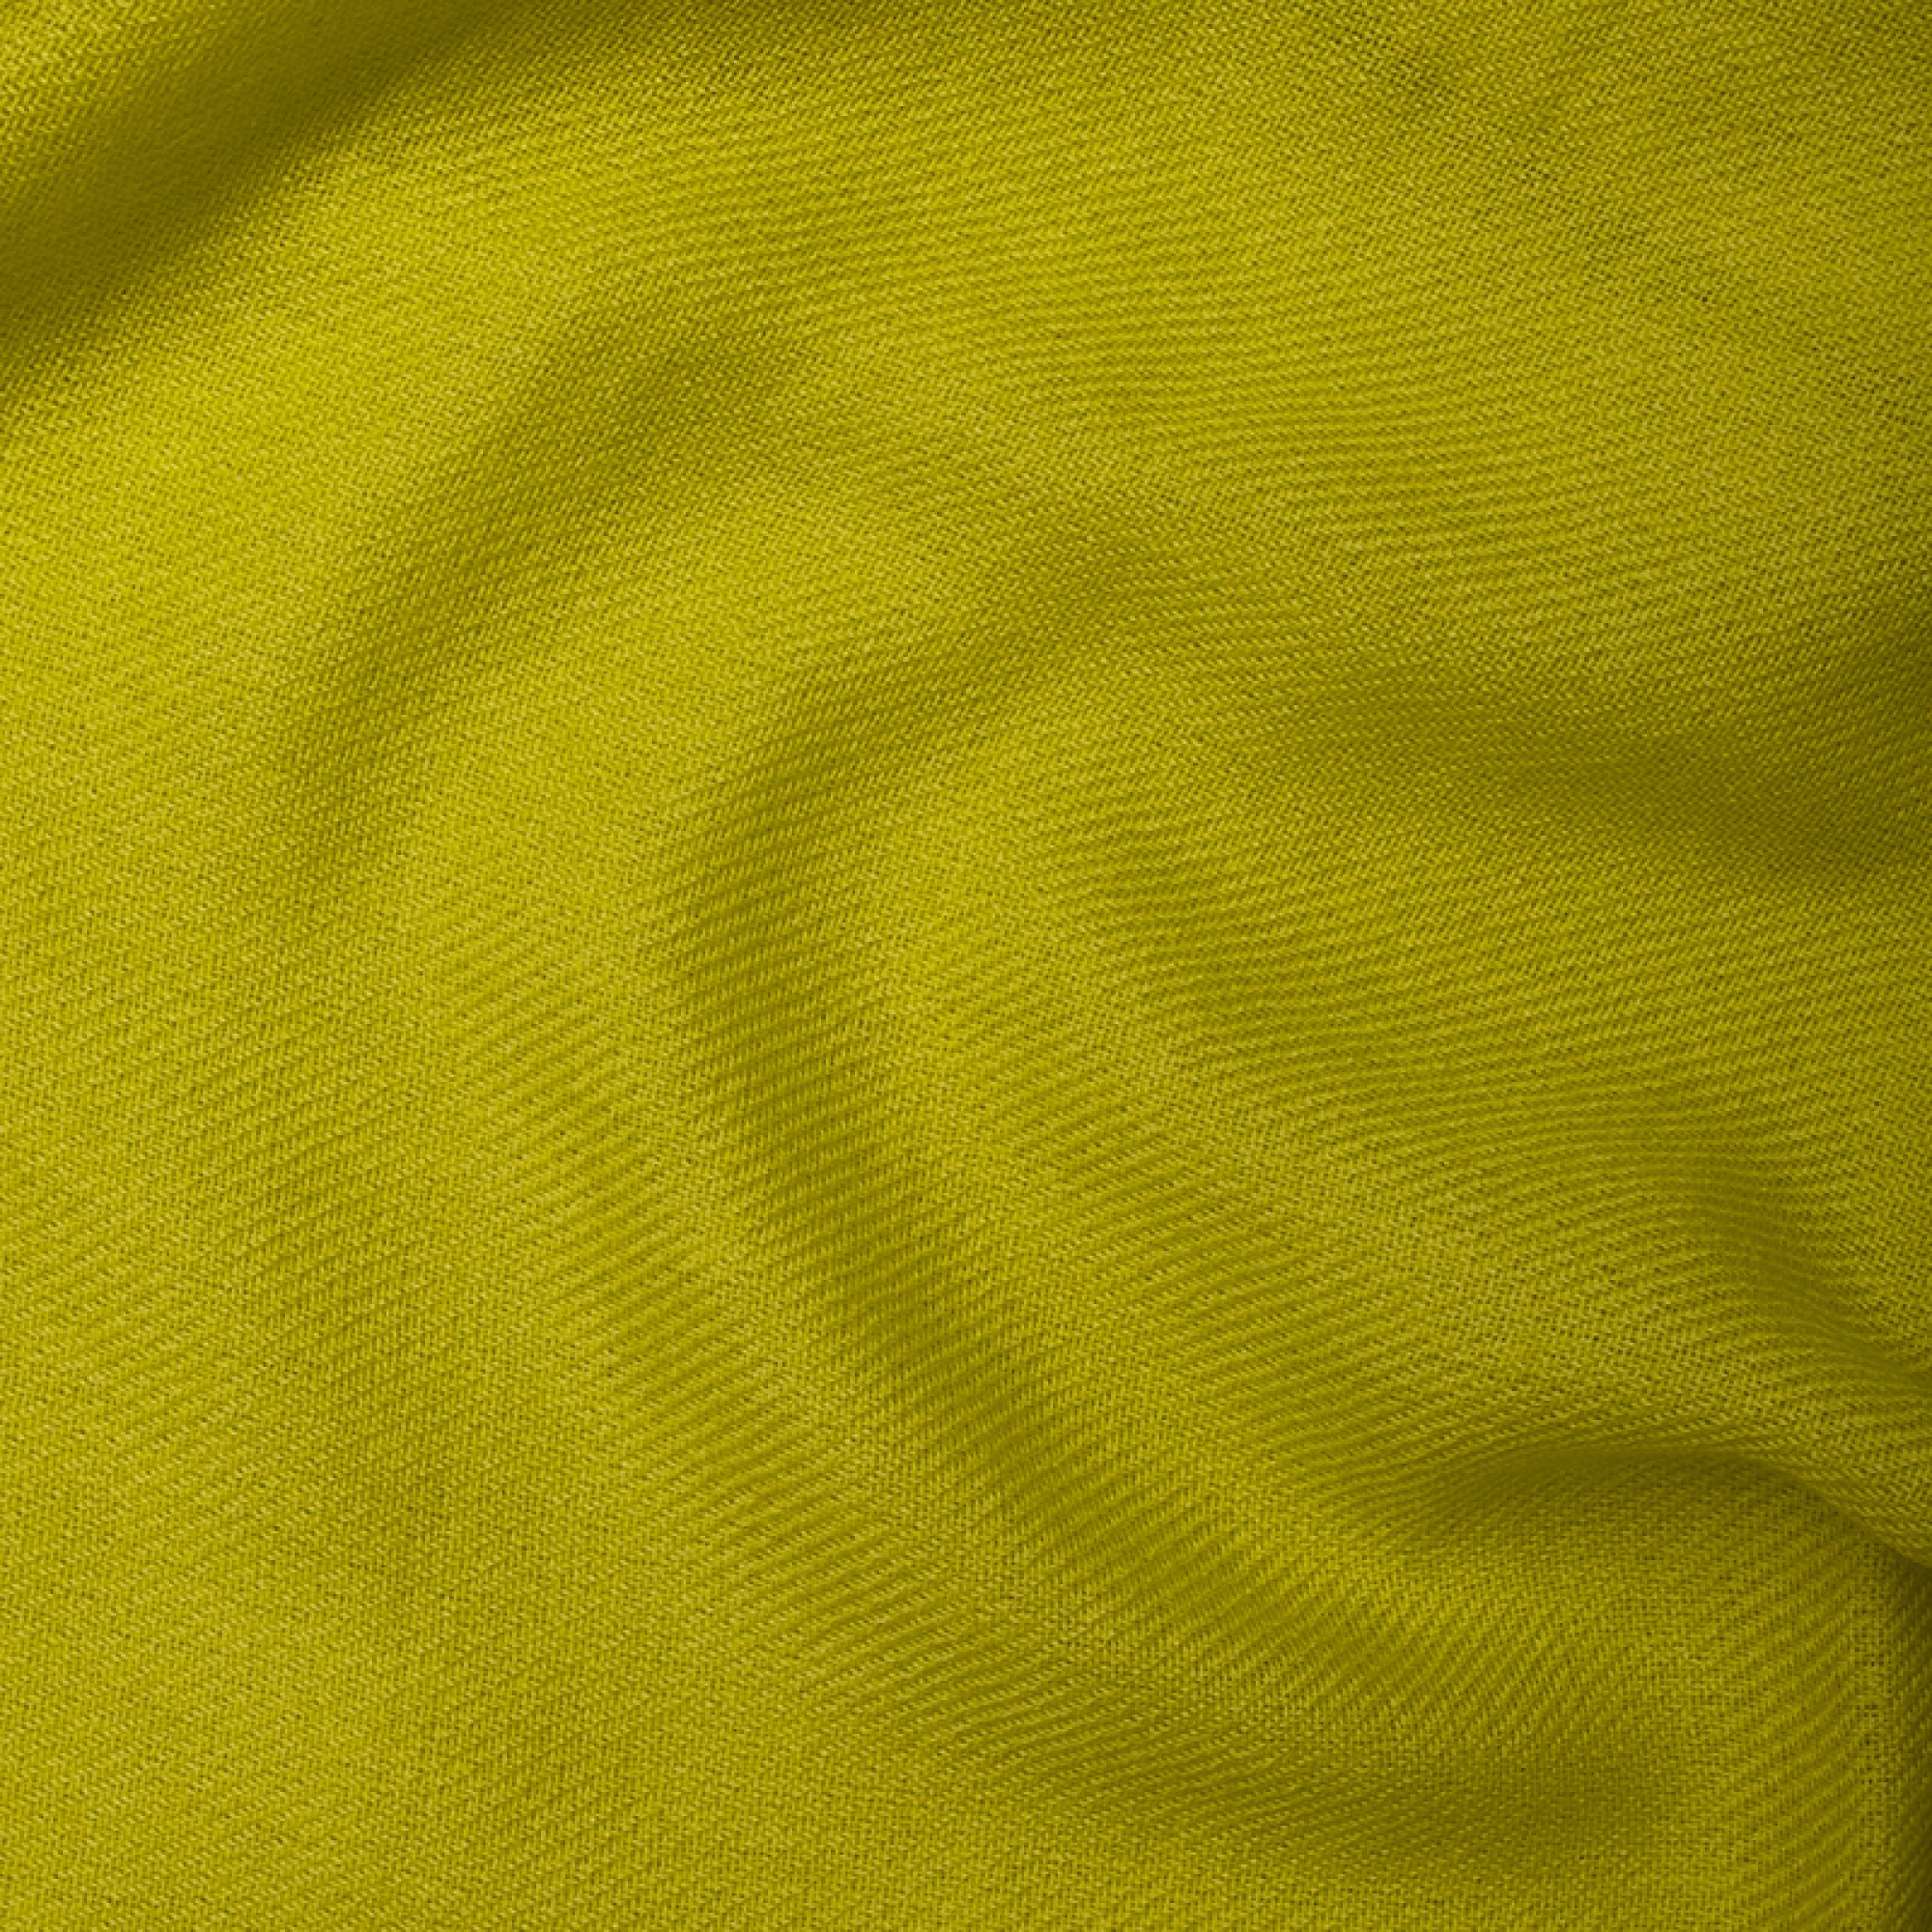 Cachemire accessoires couvertures plaids toodoo plain l 220 x 220 vert sulfureux 220x220cm